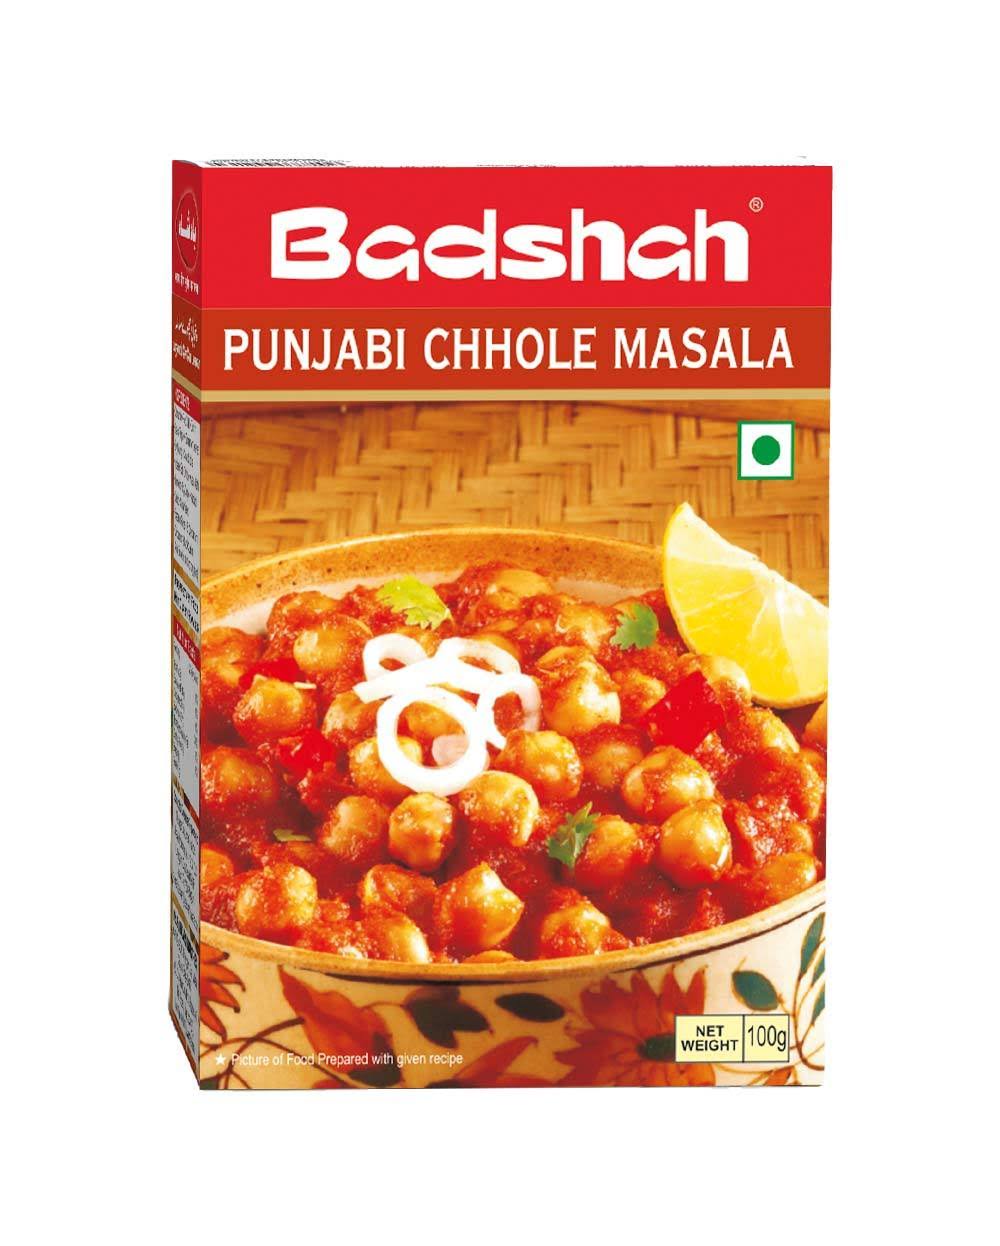 Badshah Punjabi Chhole Masala - 100g